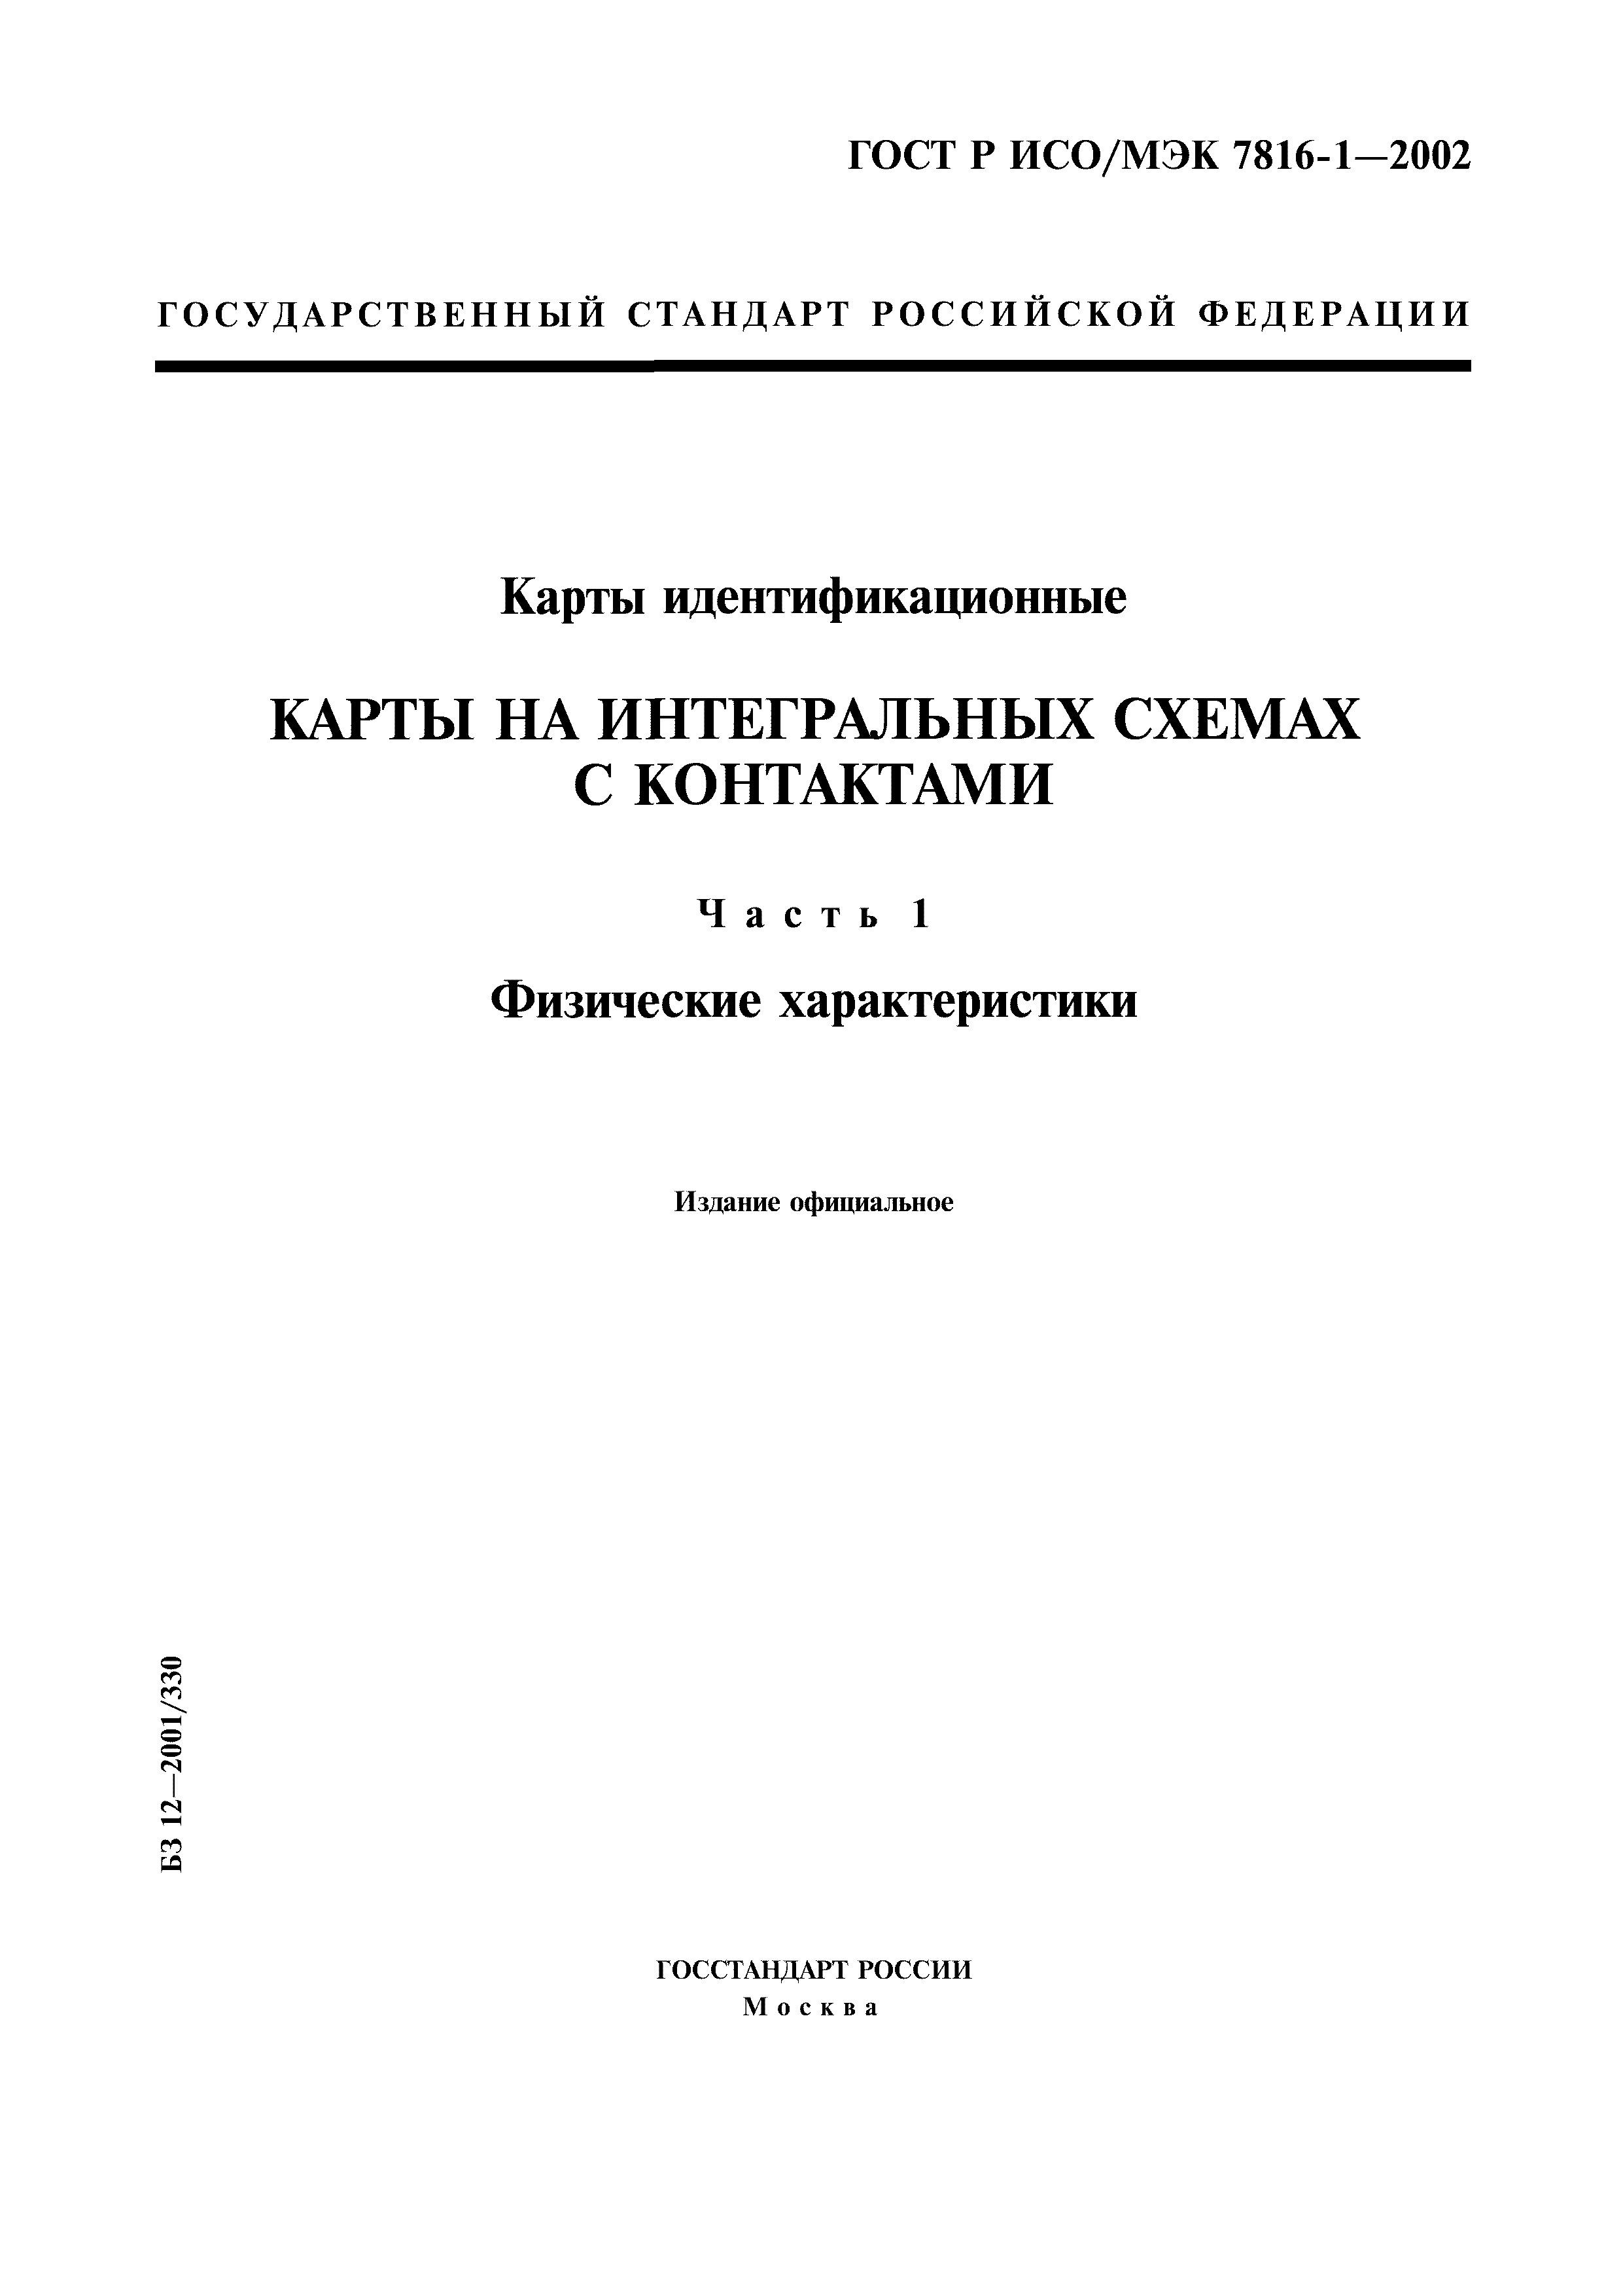 ГОСТ Р ИСО/МЭК 7816-1-2002